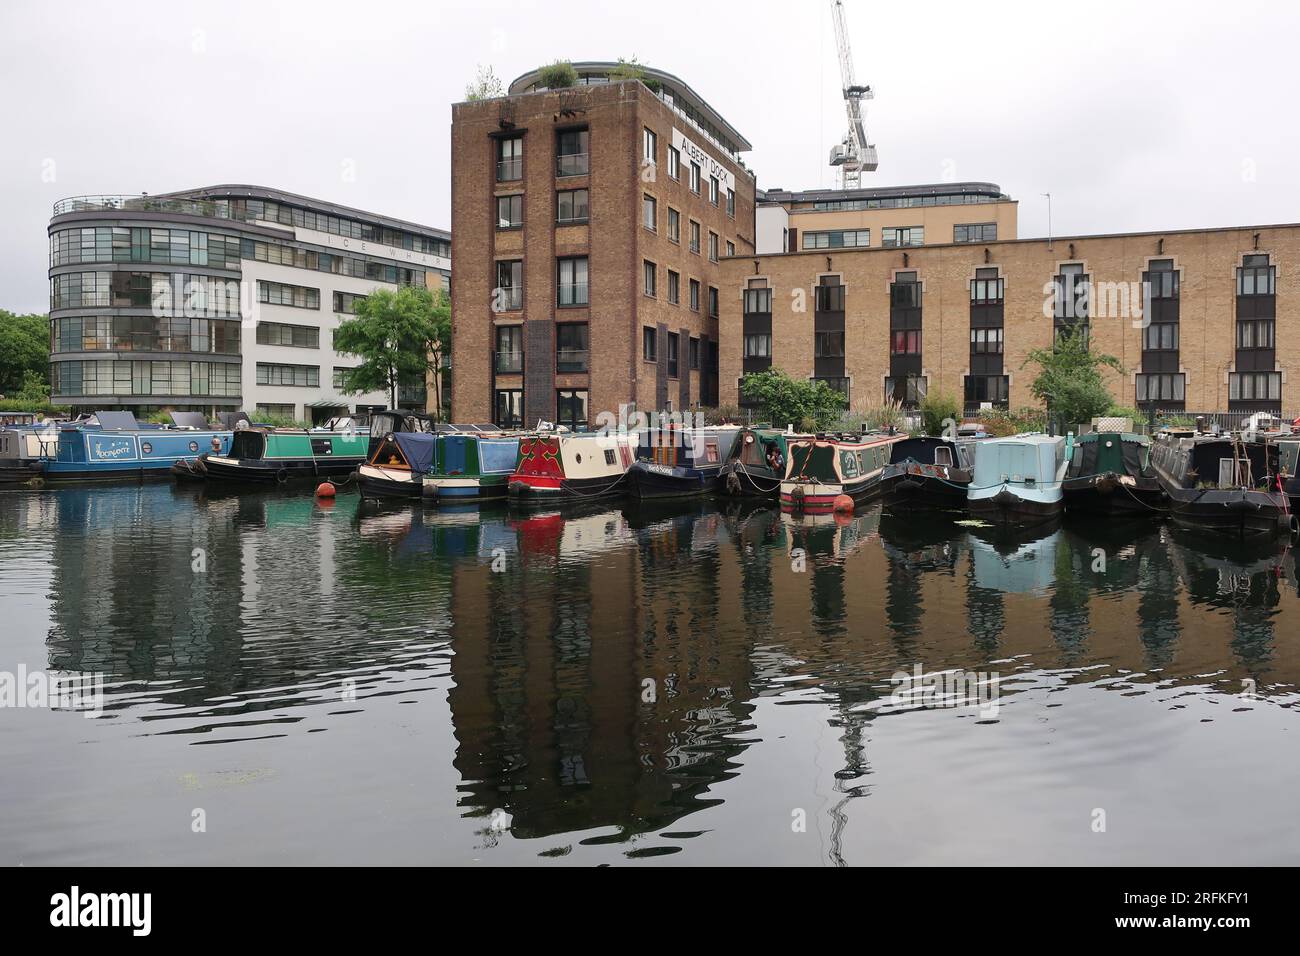 Leben auf dem Wasser: Schmalboote, die am Battlebridge Basin am Regent's Canal neben Londoner Wohnungen und dem ehemaligen Albert Dock ankerten. Stockfoto